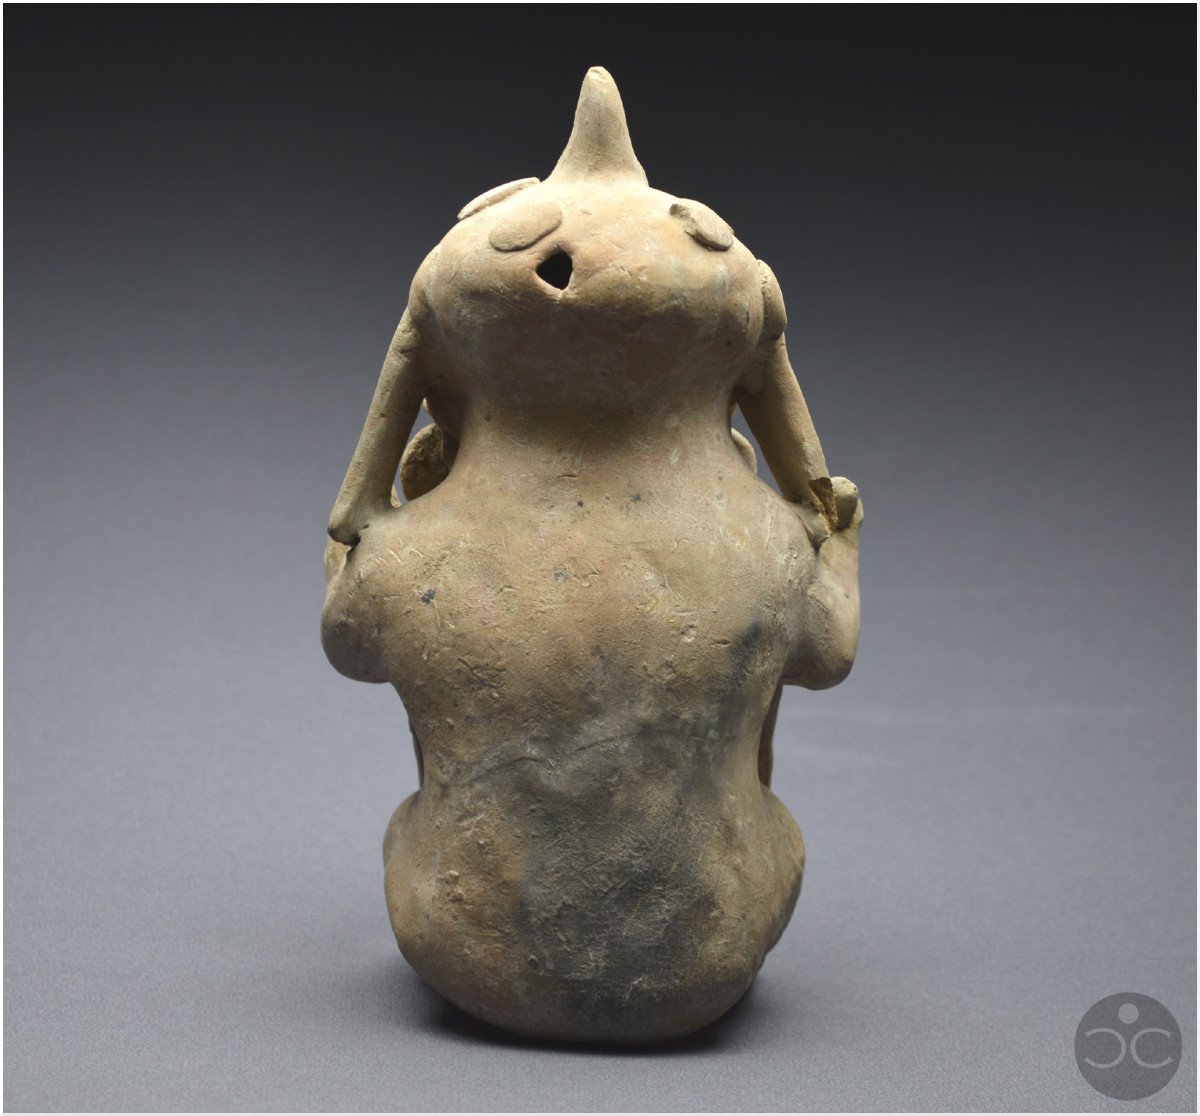 Équateur, 500 av - 500 ap J. -C., Culture Jama-Coaque, Shaman aux offrandes, Céramique ocre-photo-2